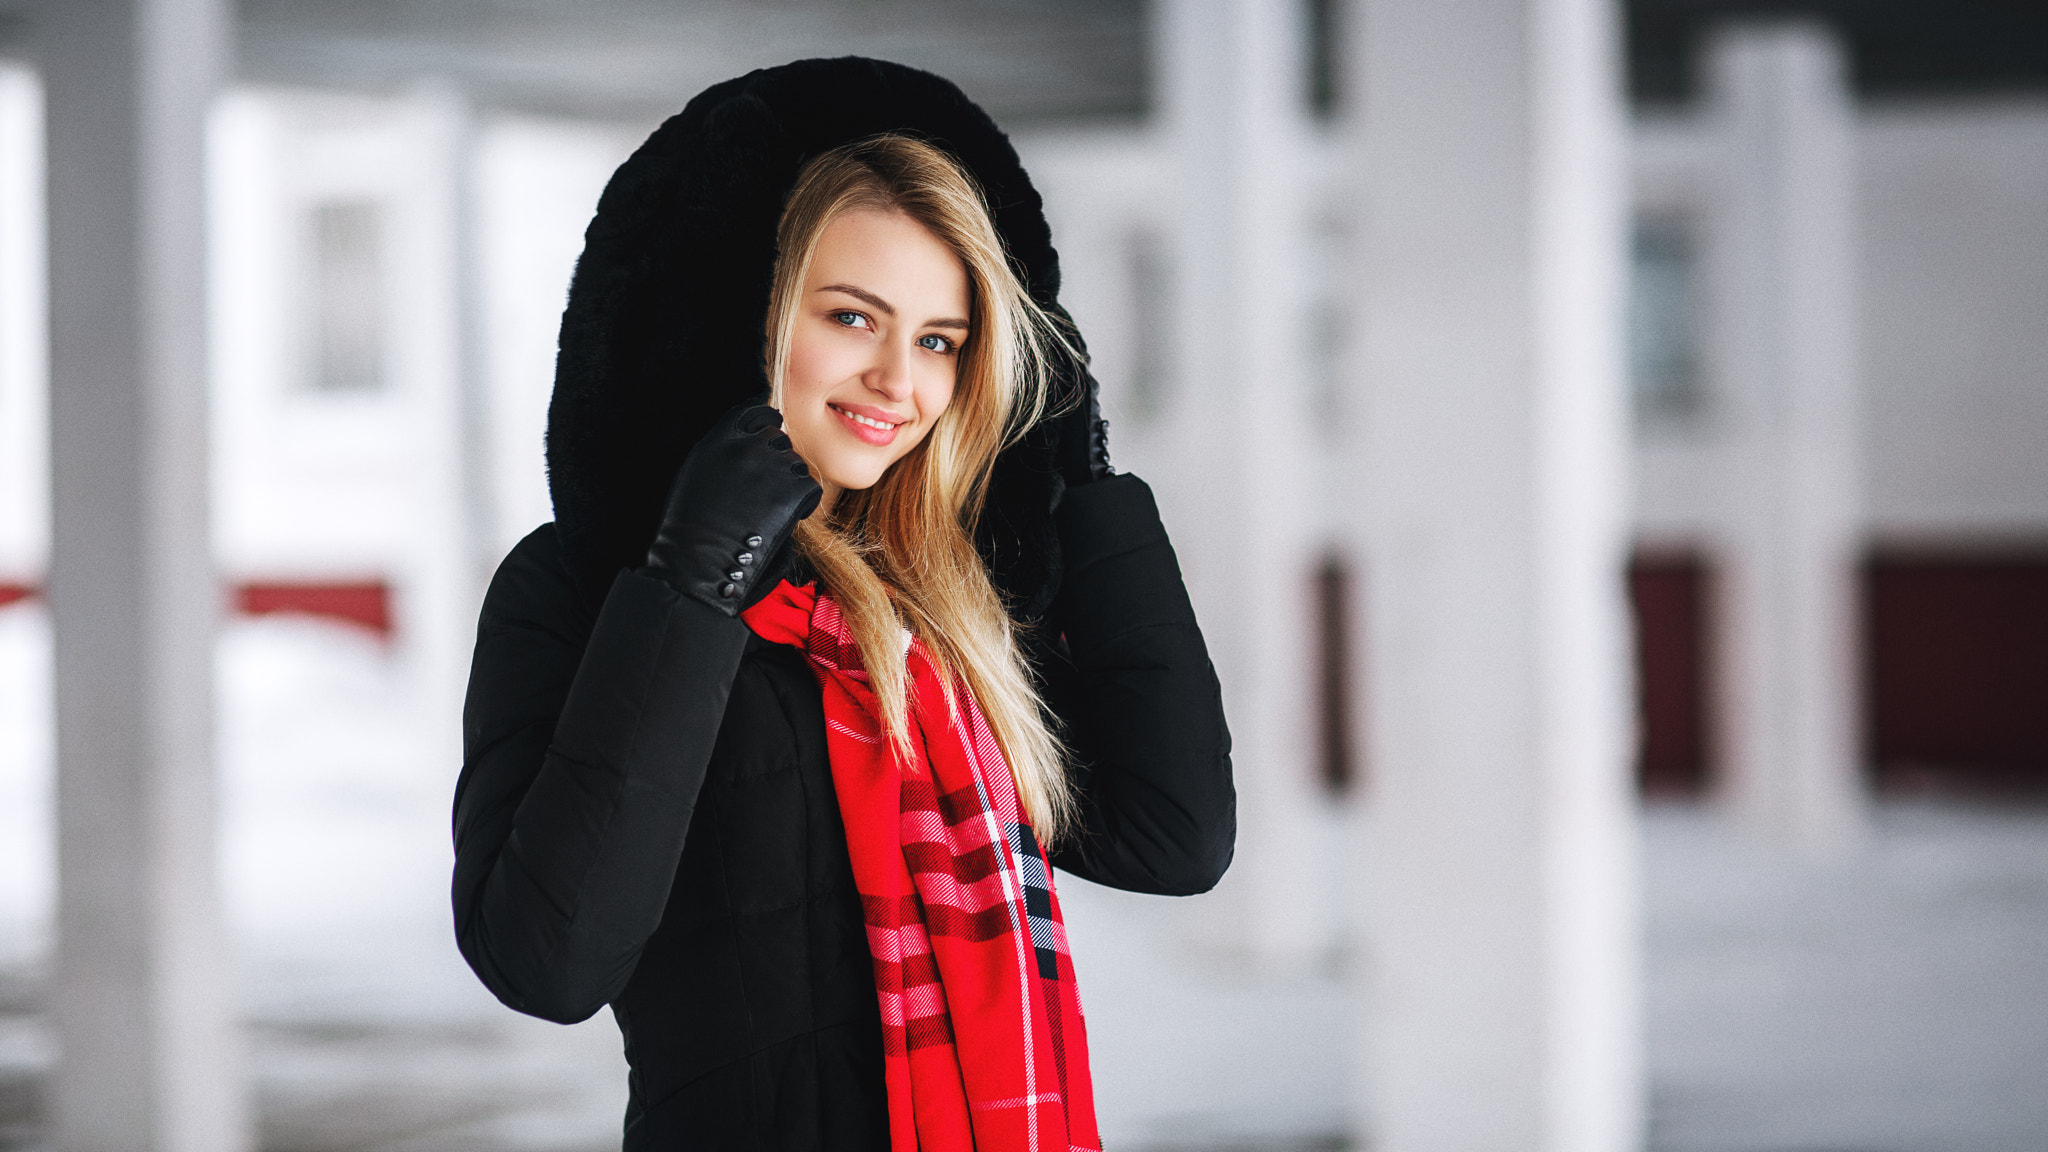 Девушка в красной куртке зимой